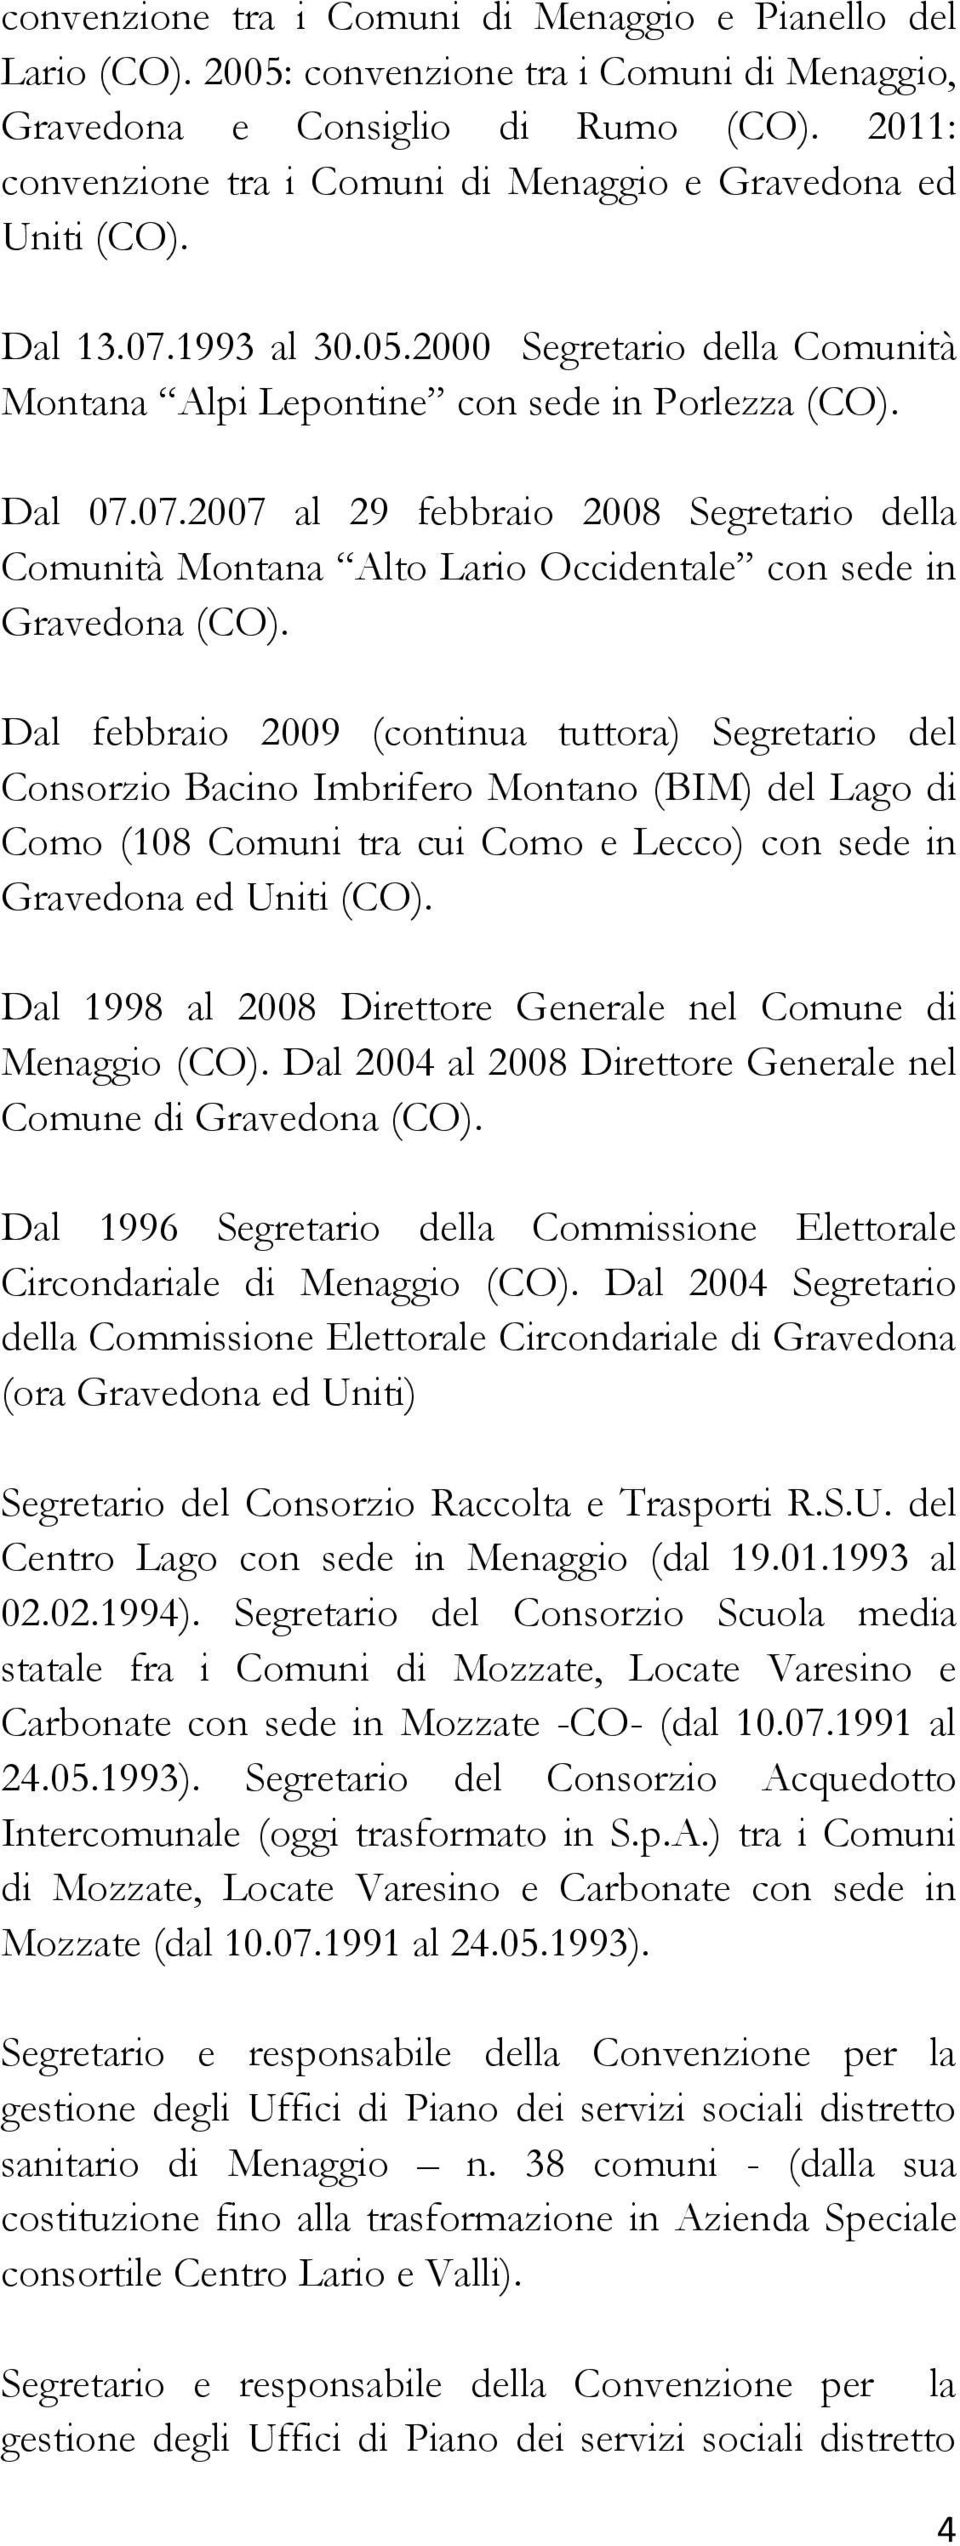 Dal febbraio 2009 (continua tuttora) Segretario del Consorzio Bacino Imbrifero Montano (BIM) del Lago di Como (108 Comuni tra cui Como e Lecco) con sede in Gravedona ed Uniti (CO).